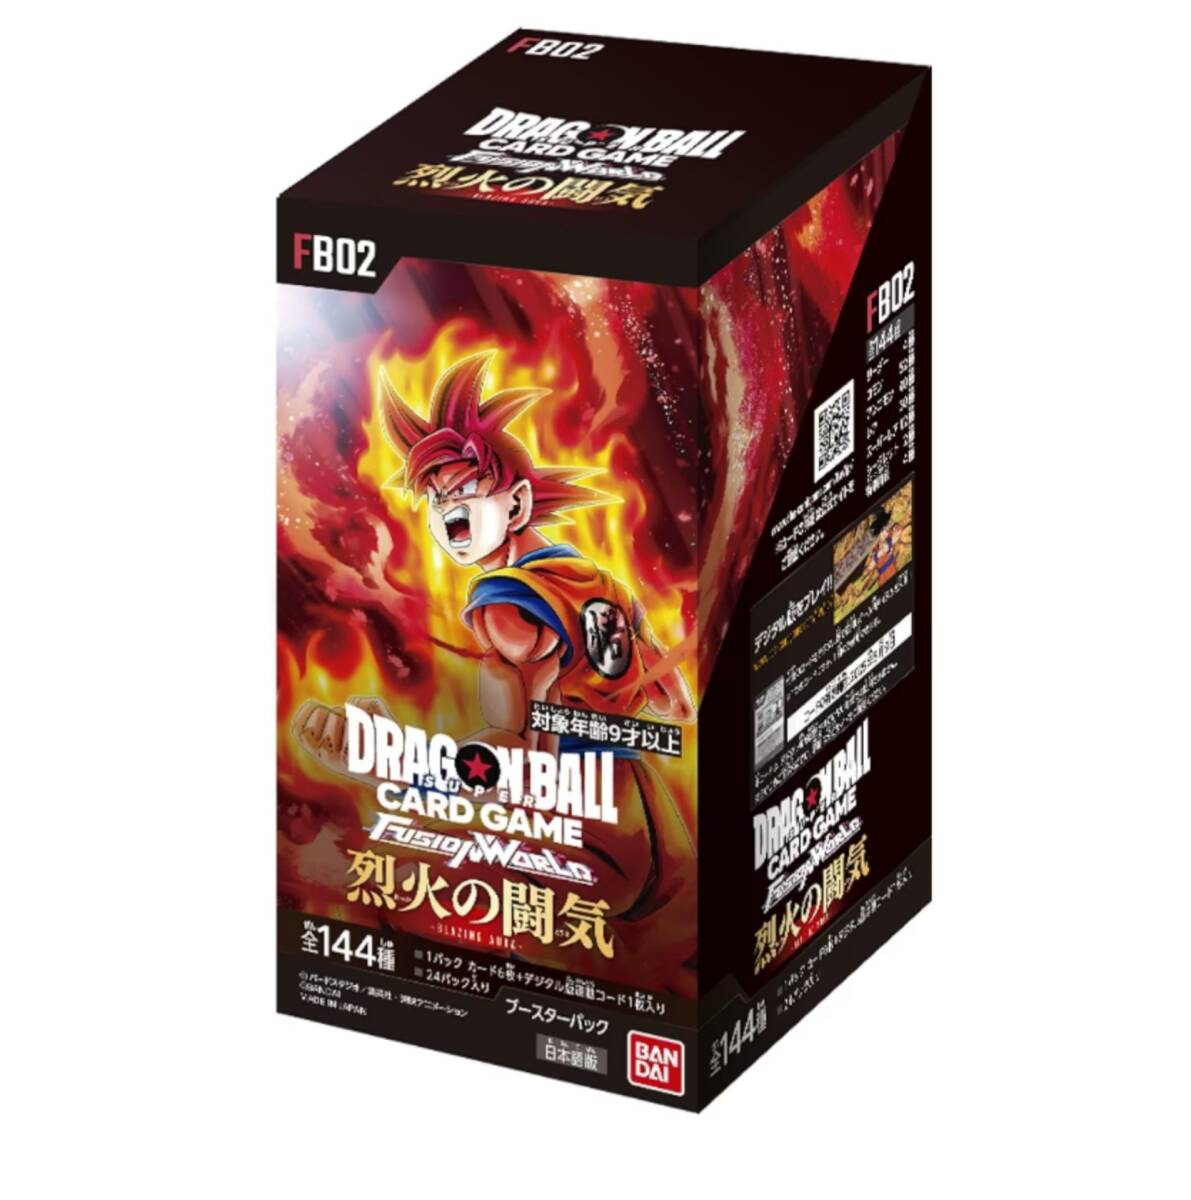 ドラゴンボールカードゲーム 烈火の闘気 1box分 フュージョンワールド 覚醒の鼓動 DRAGONBALLの画像1